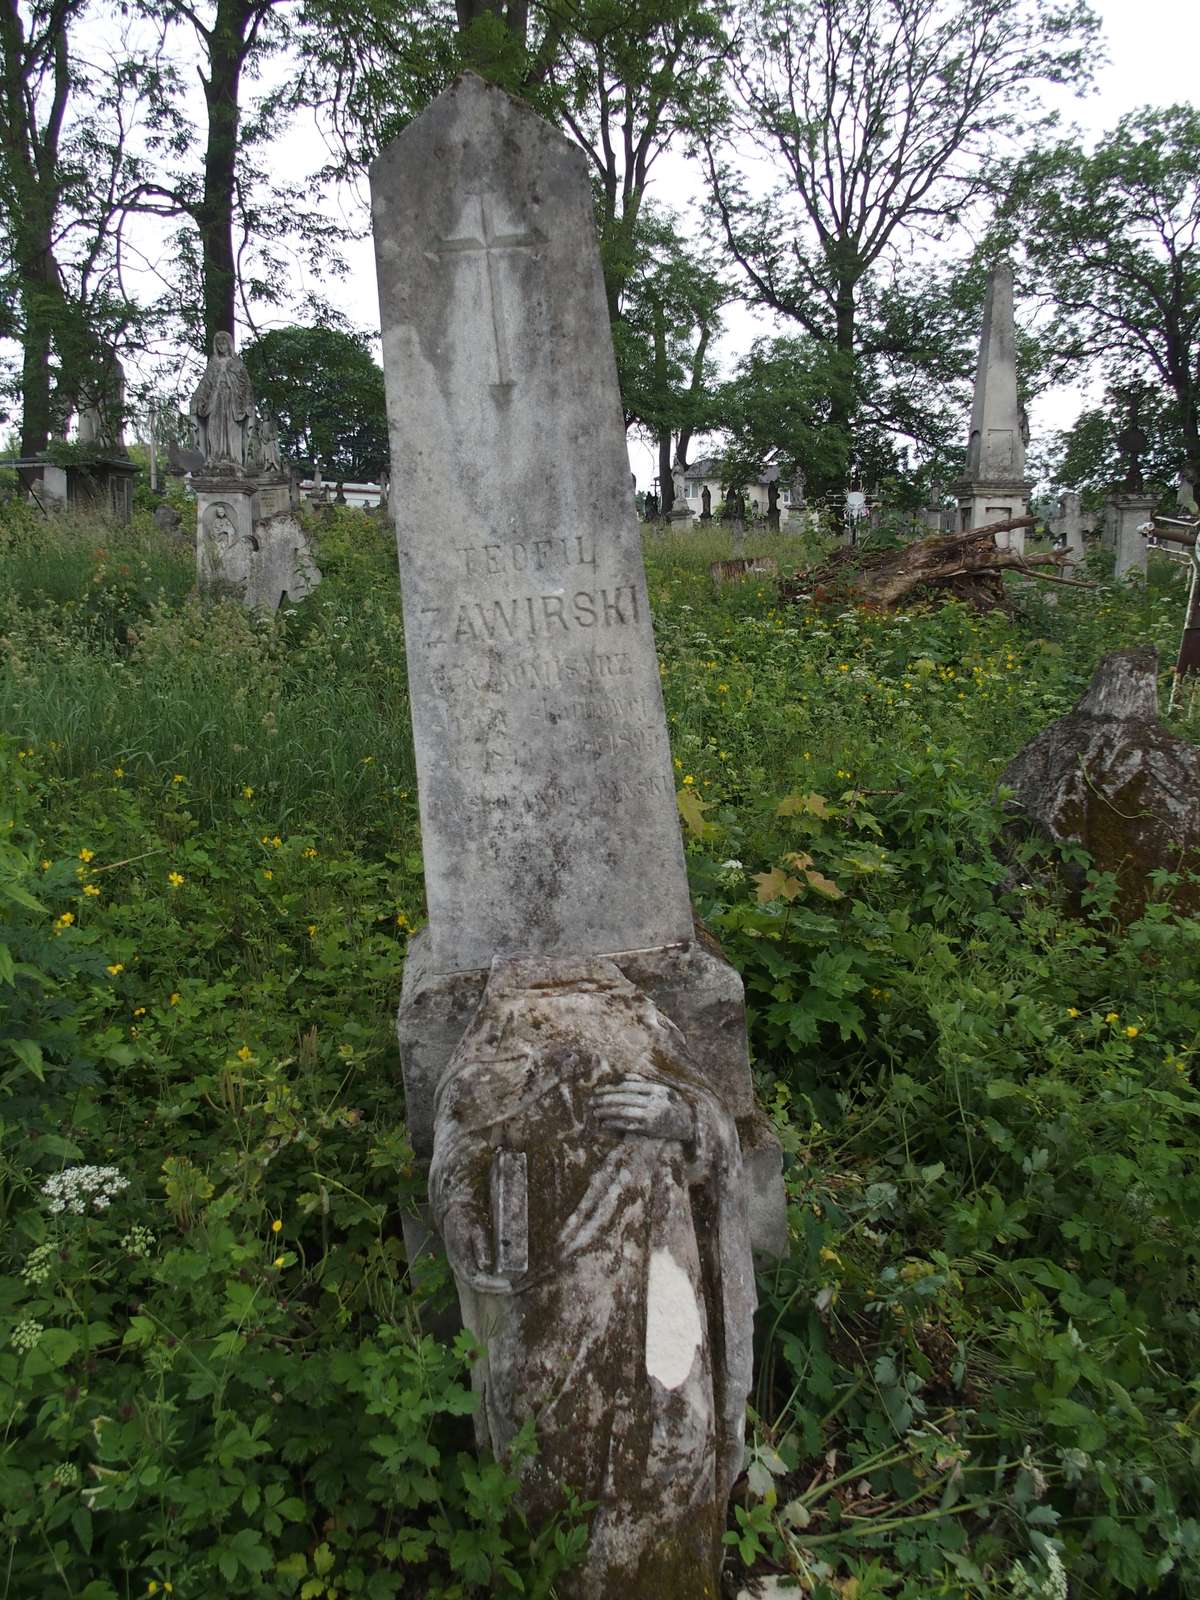 Tombstone of Teofil Zawirski, Zbarazh cemetery, as of 2018.